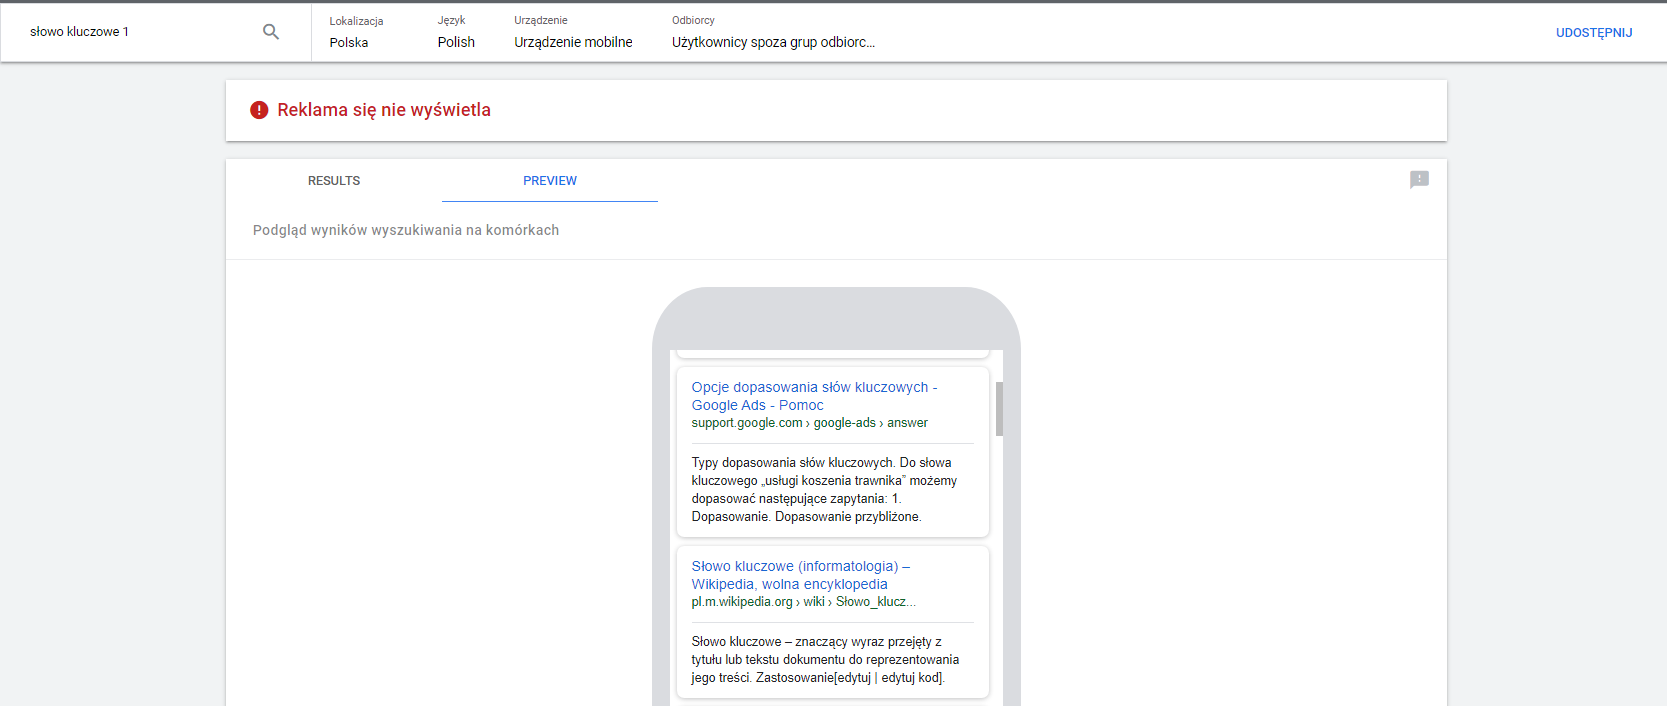 audyt google ads wyszukiwanie mobilne